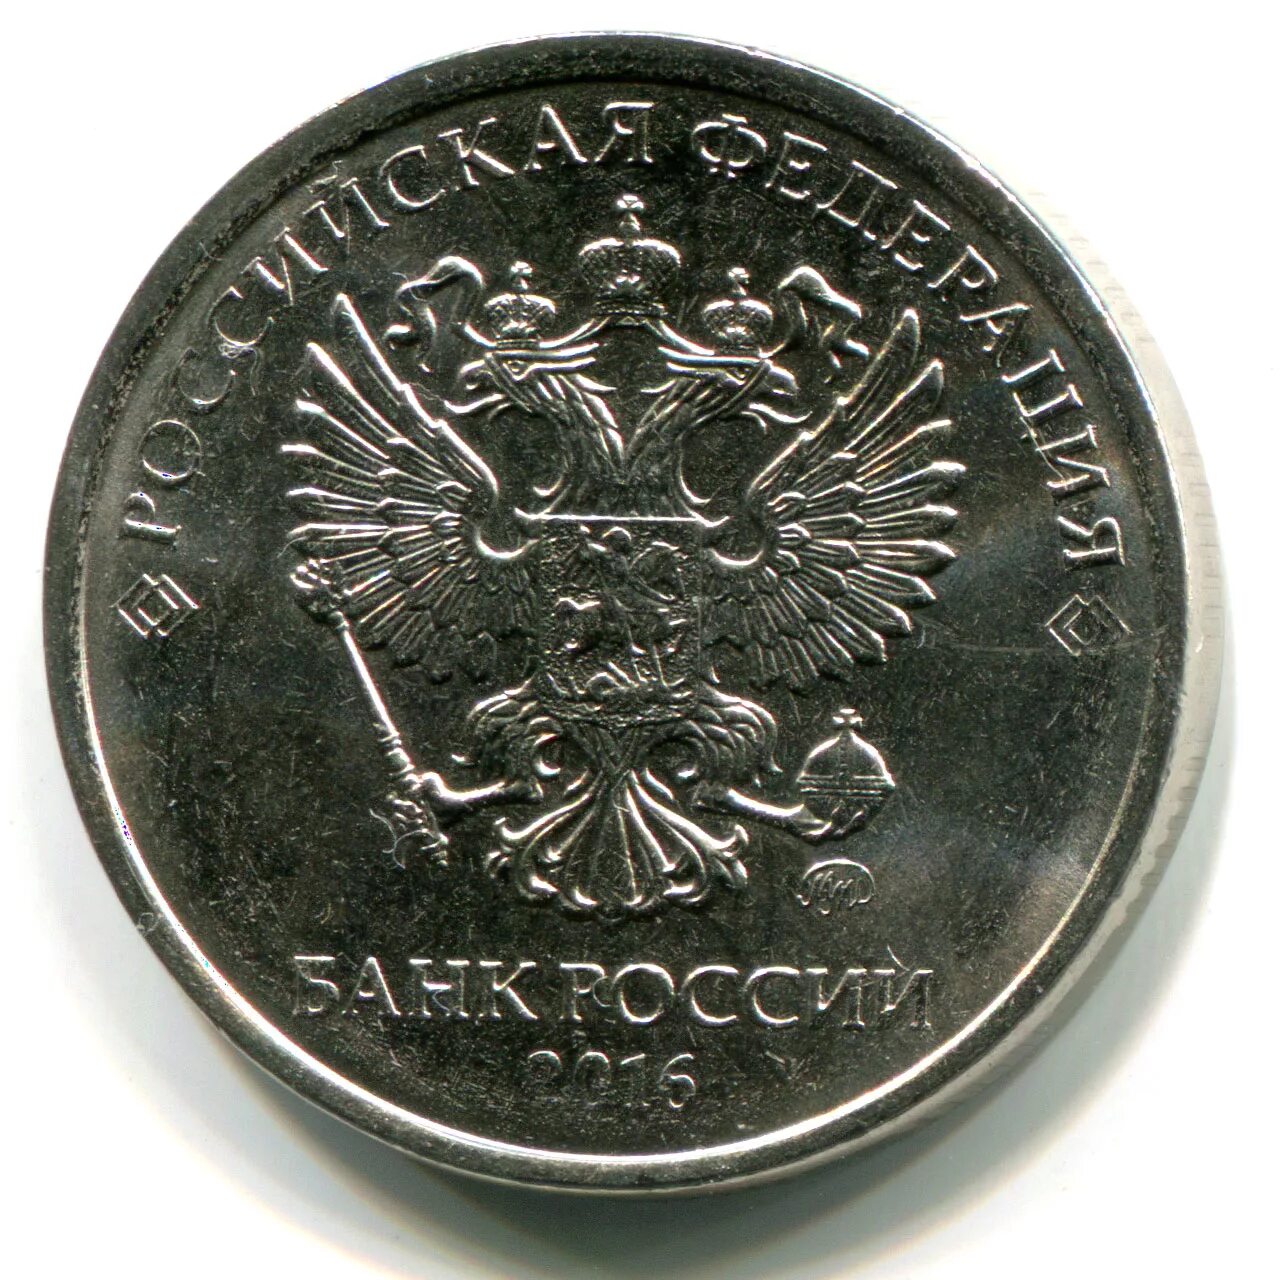 1 российский рубль. Монеты 1 рубль 2 рубля. Аверс монеты 1 рубль. Аверс монеты. Аверс монеты рубль.